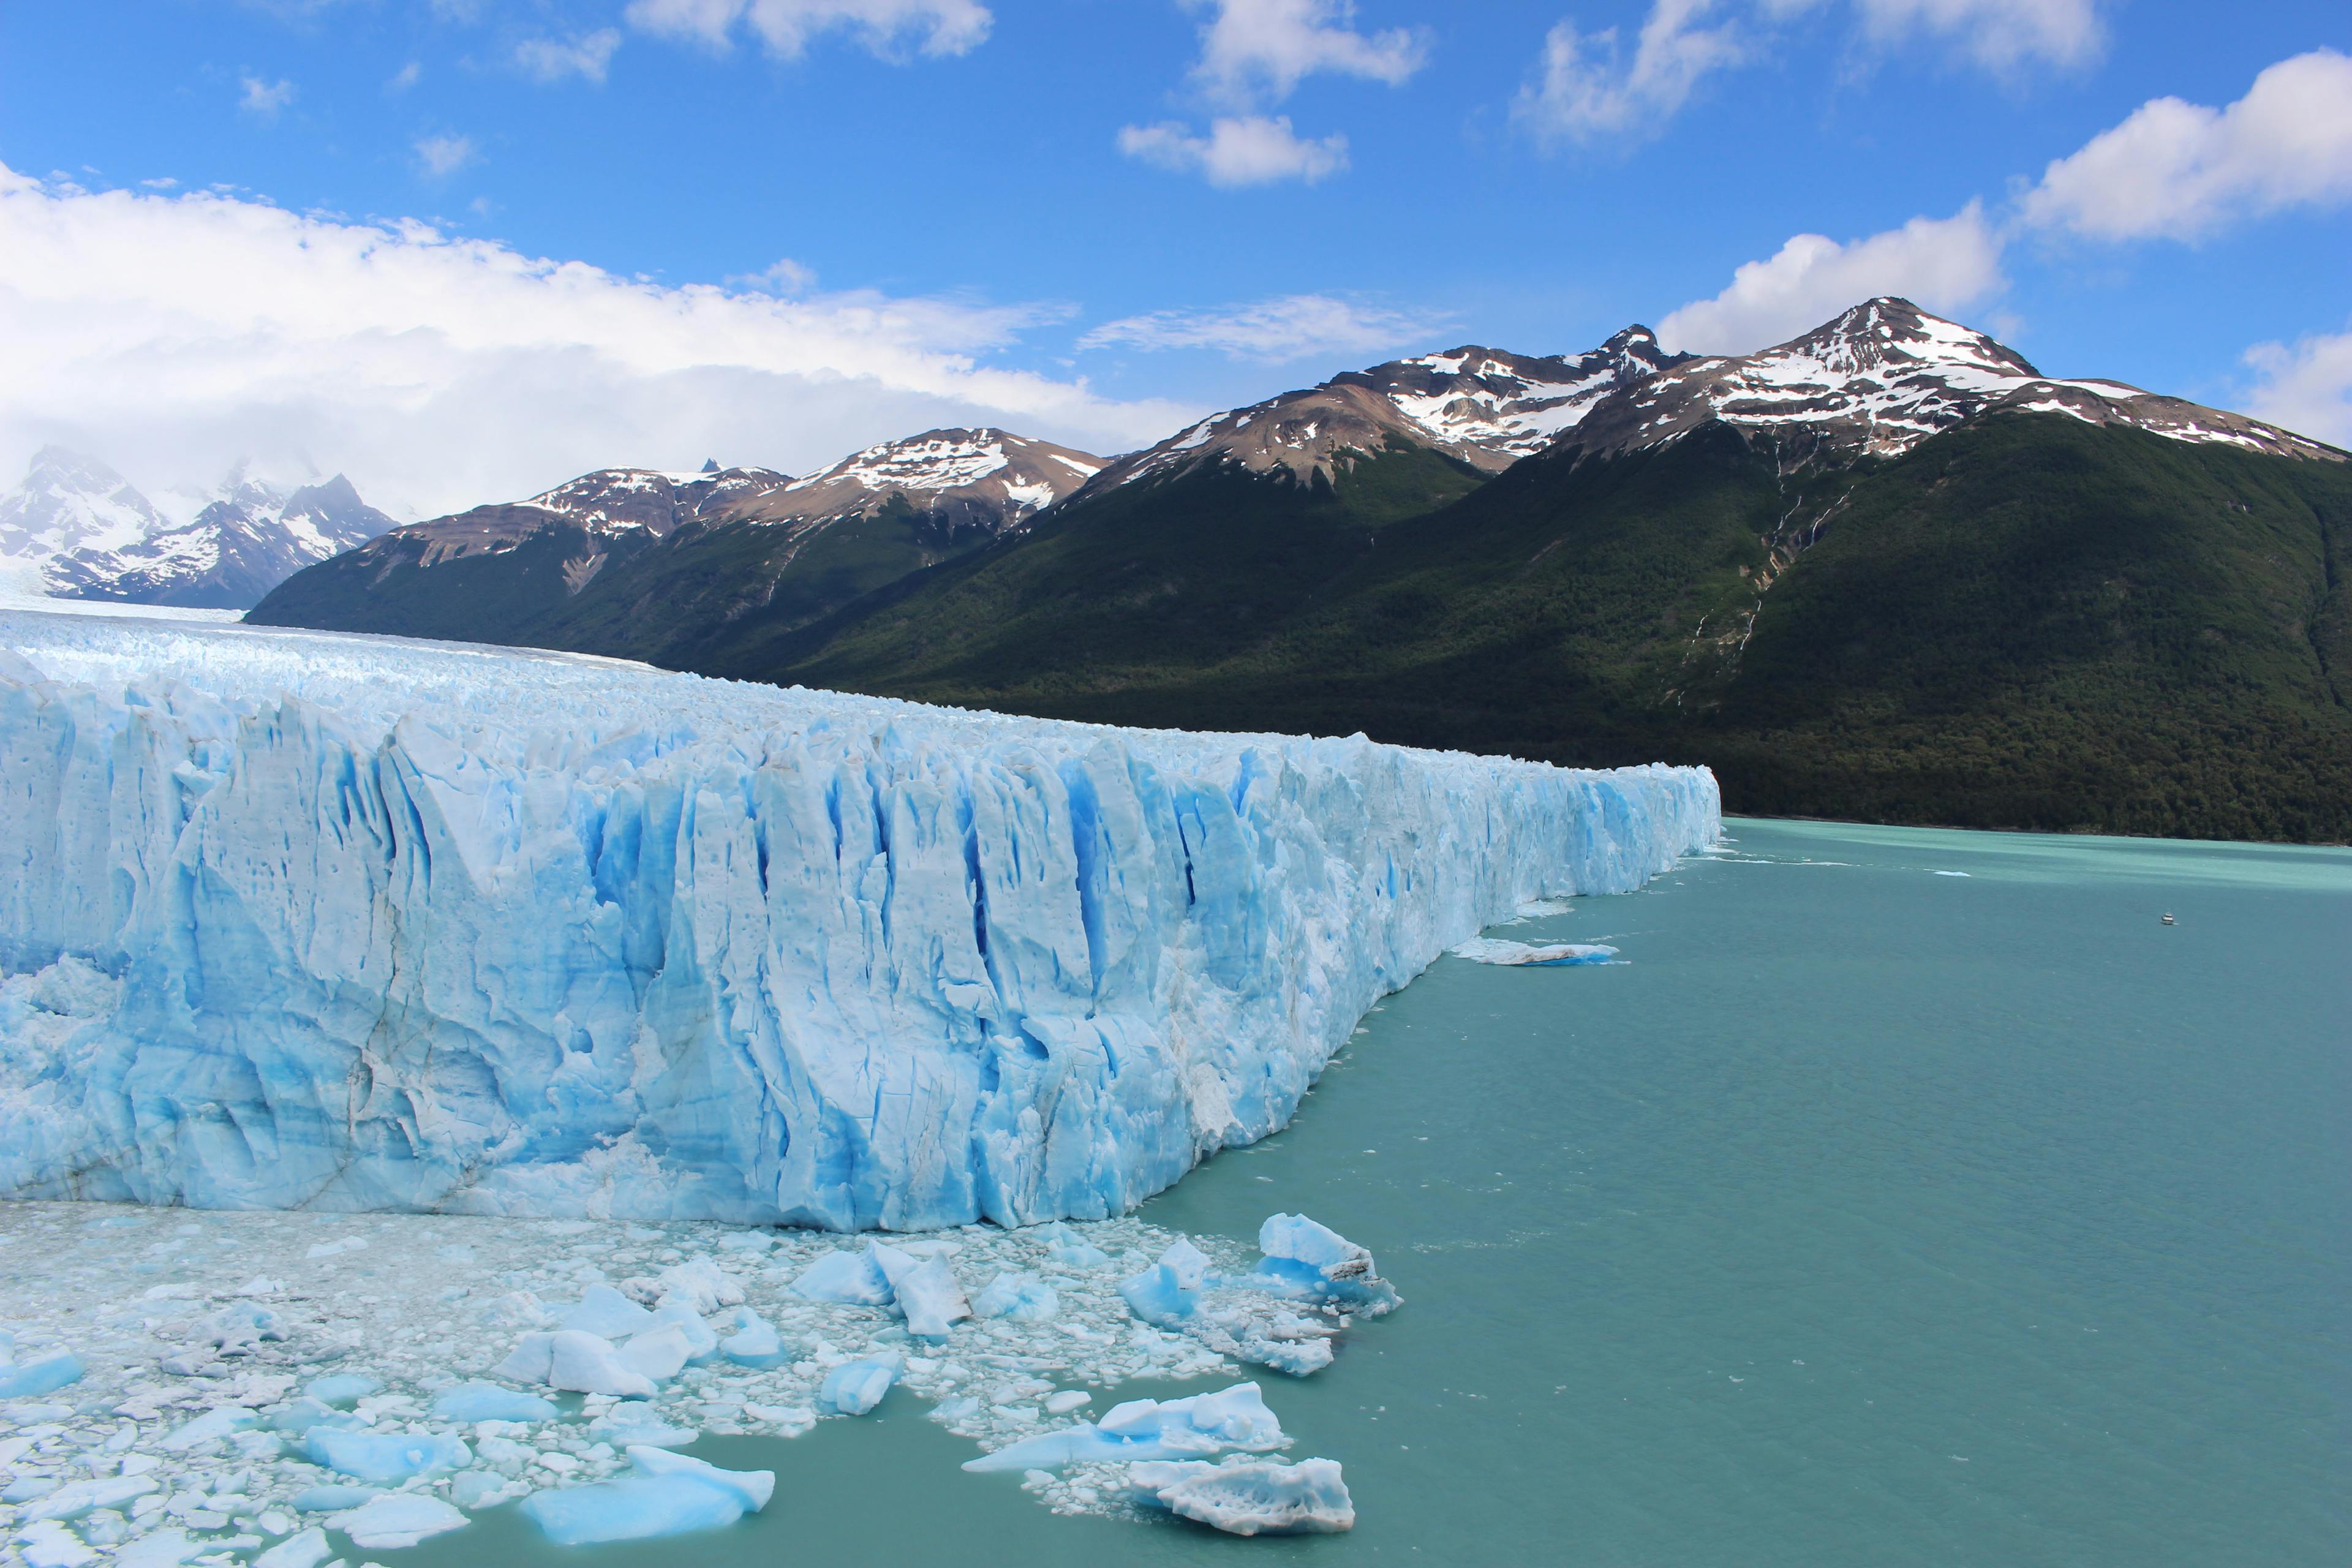 Perito Moreno Glacier with a view of Lago Argentina